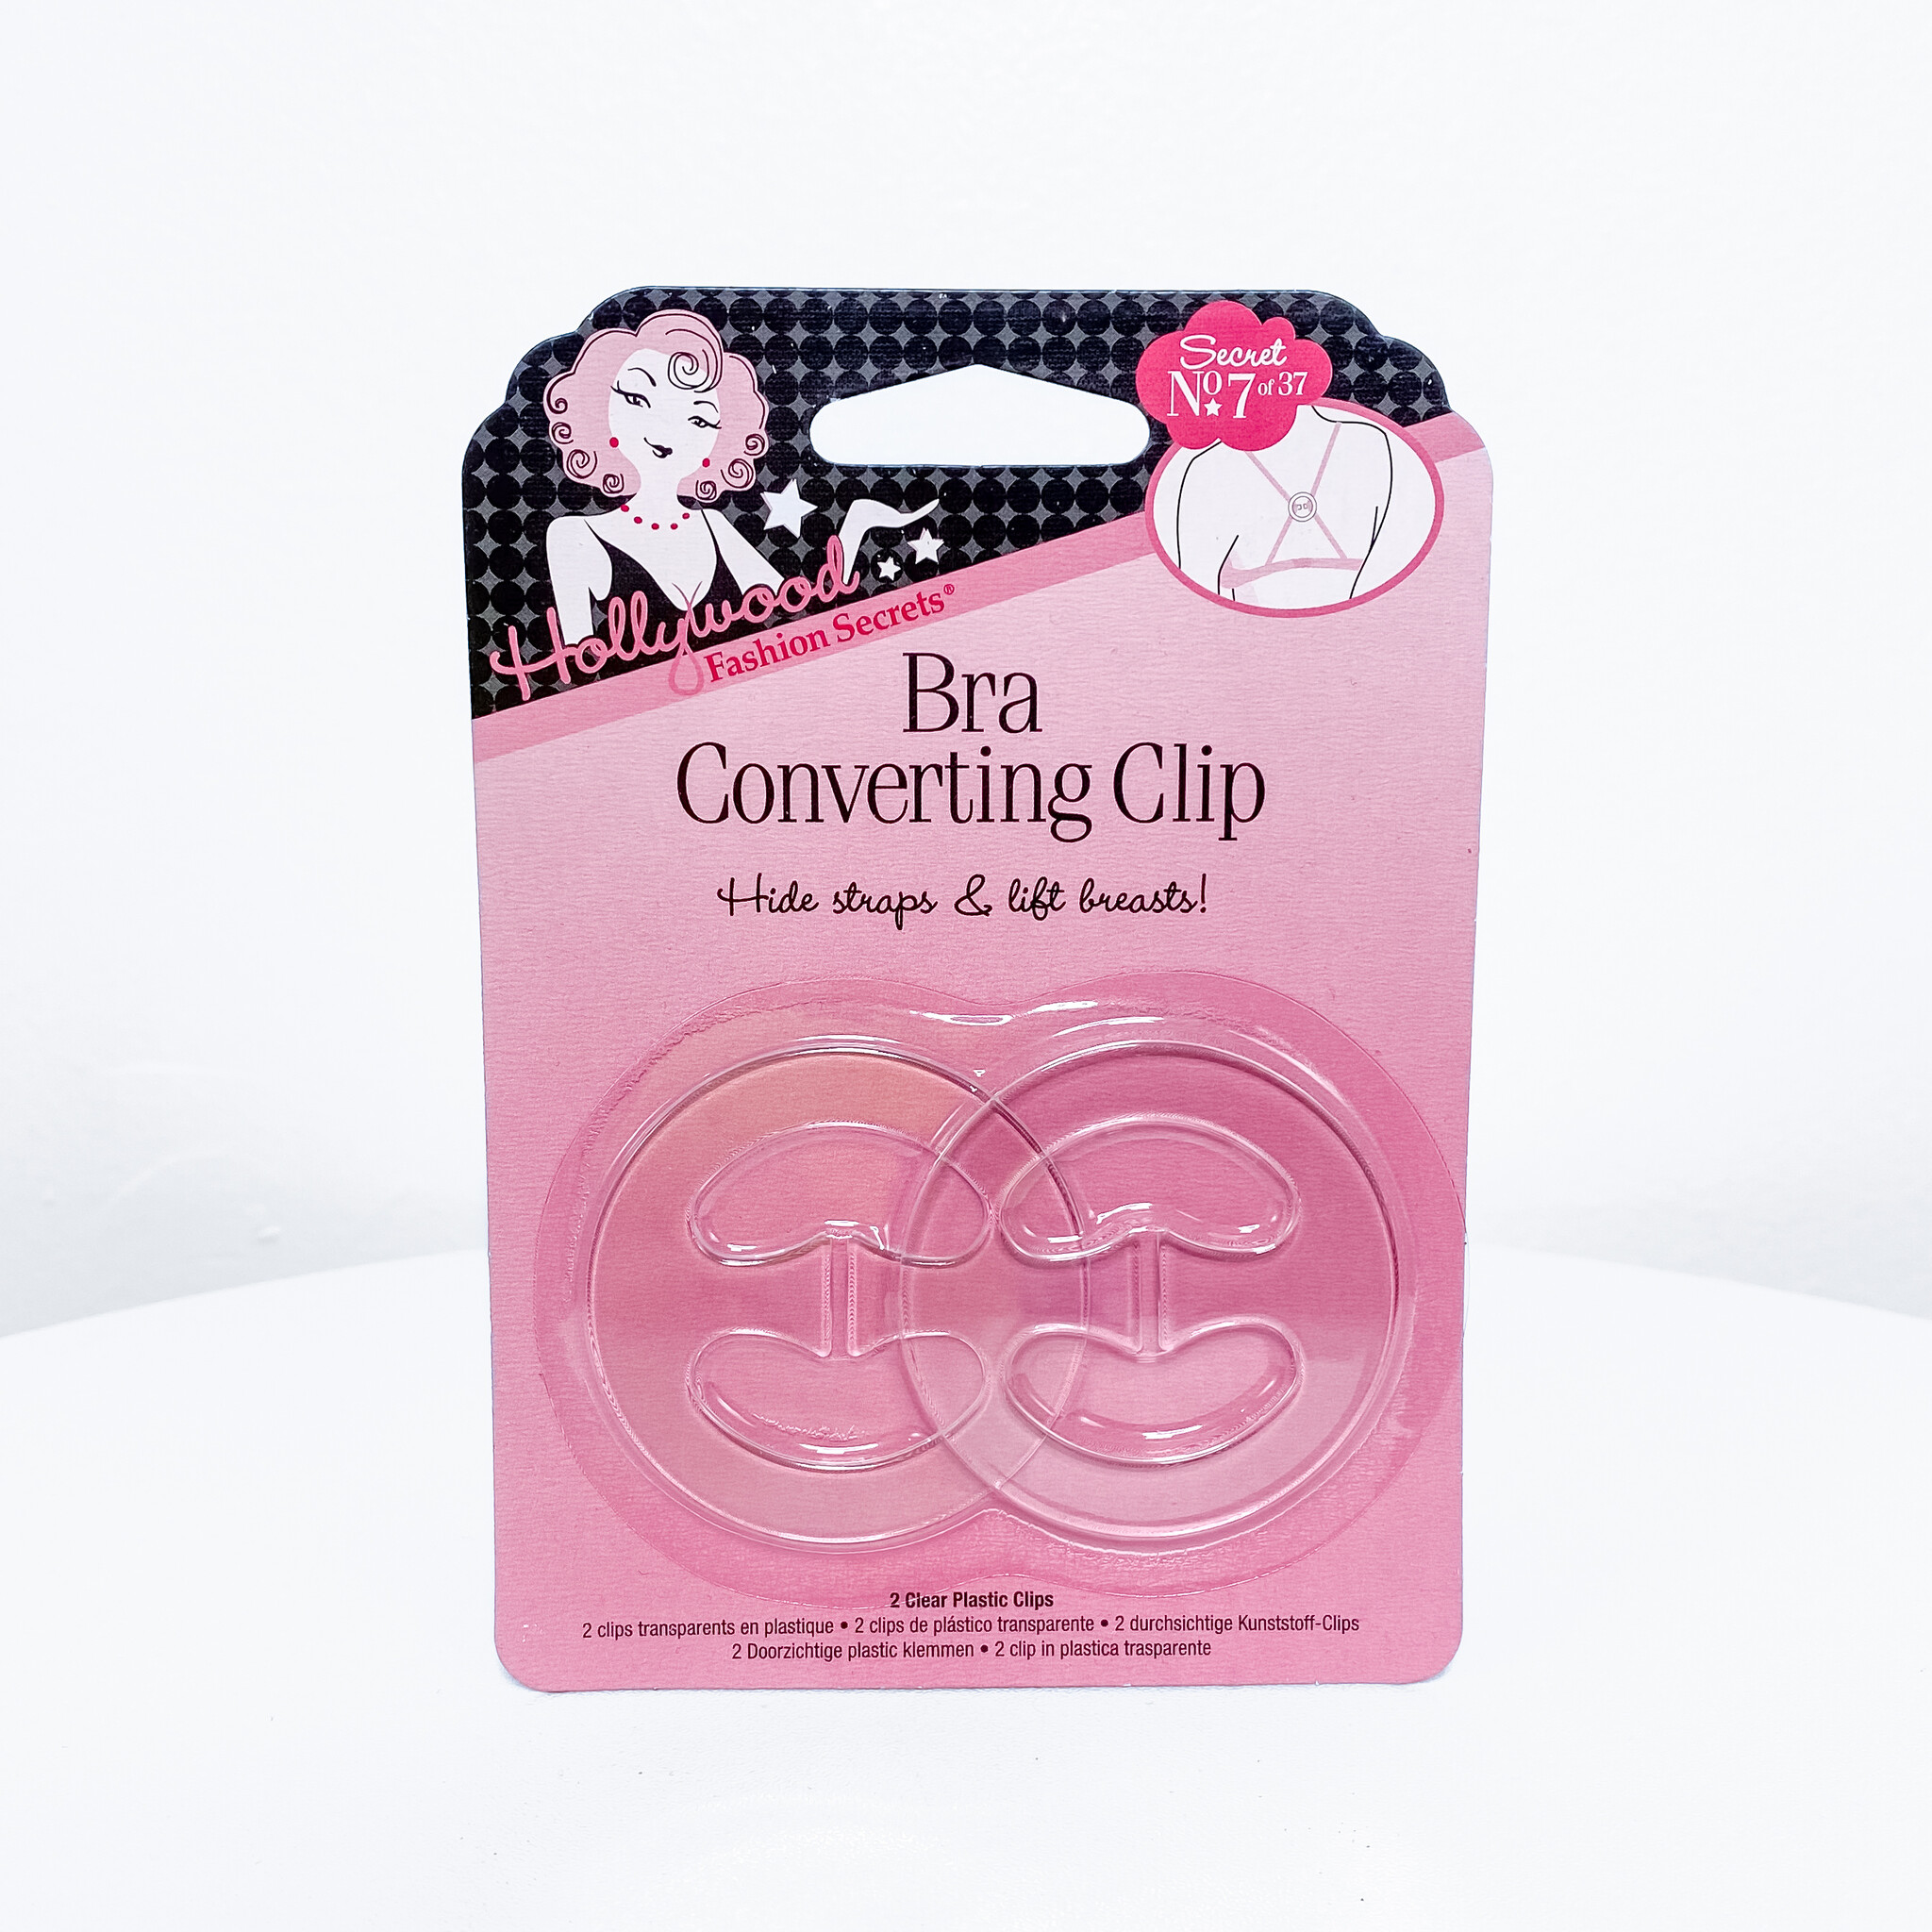 Bra Strap Clip / Bra Converting Clip